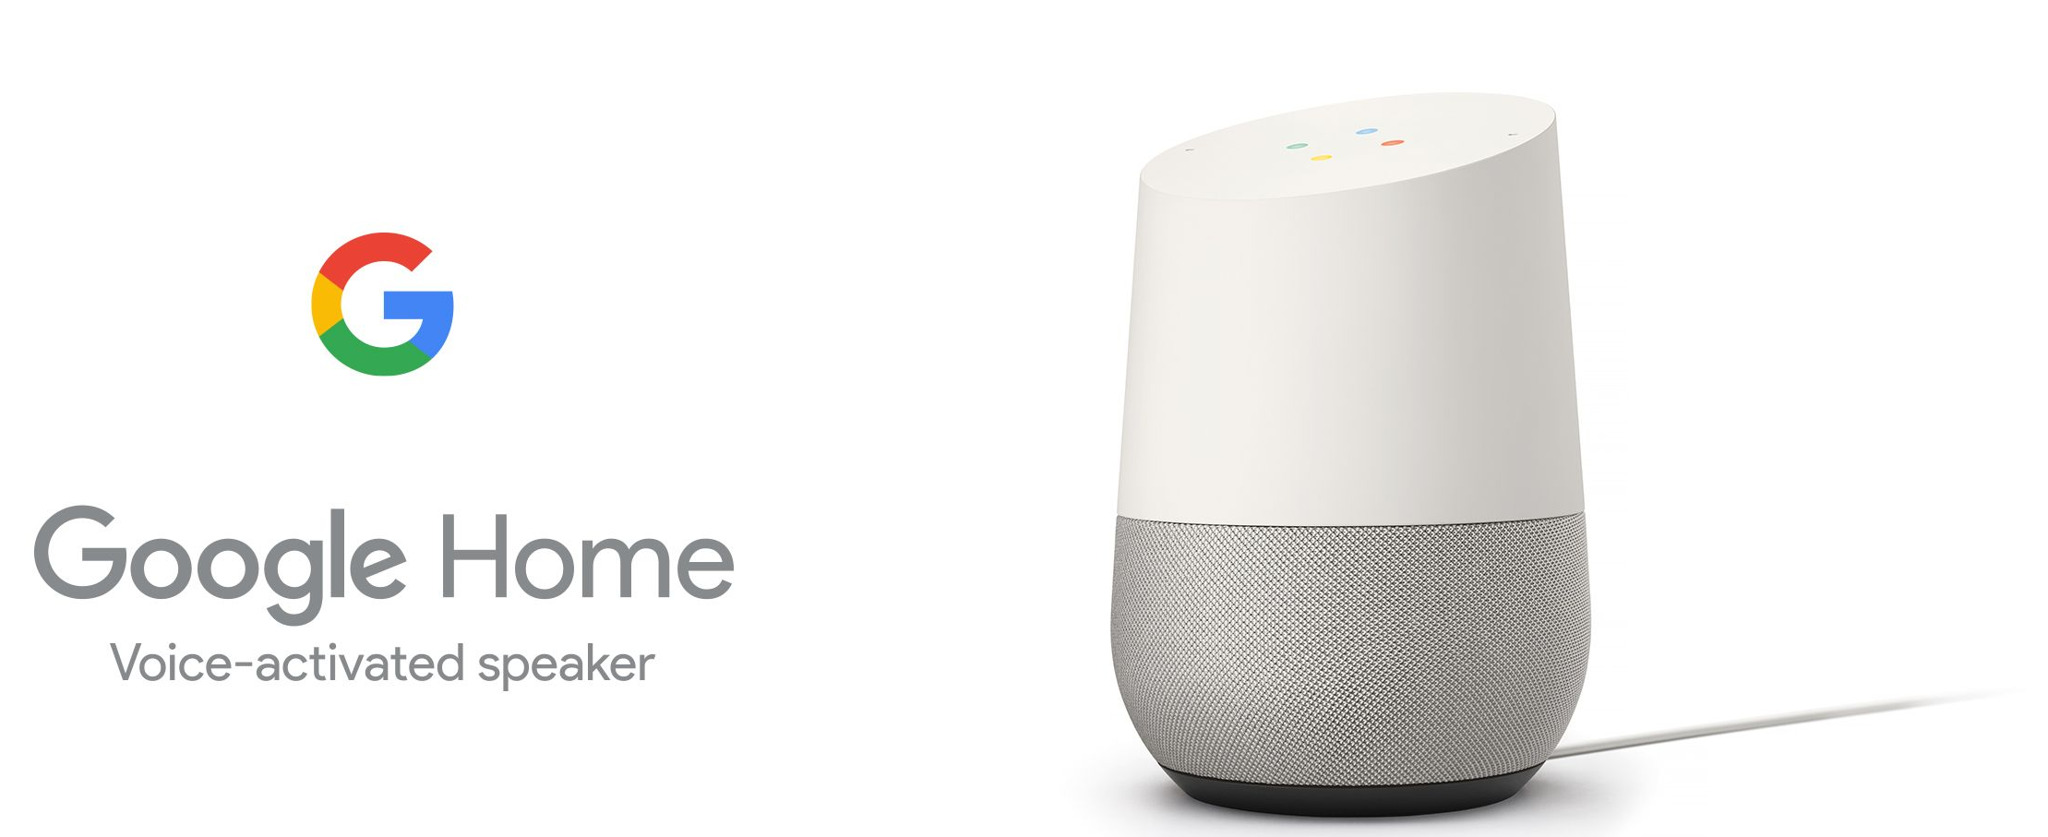 De Google Home speaker met Google Assistant